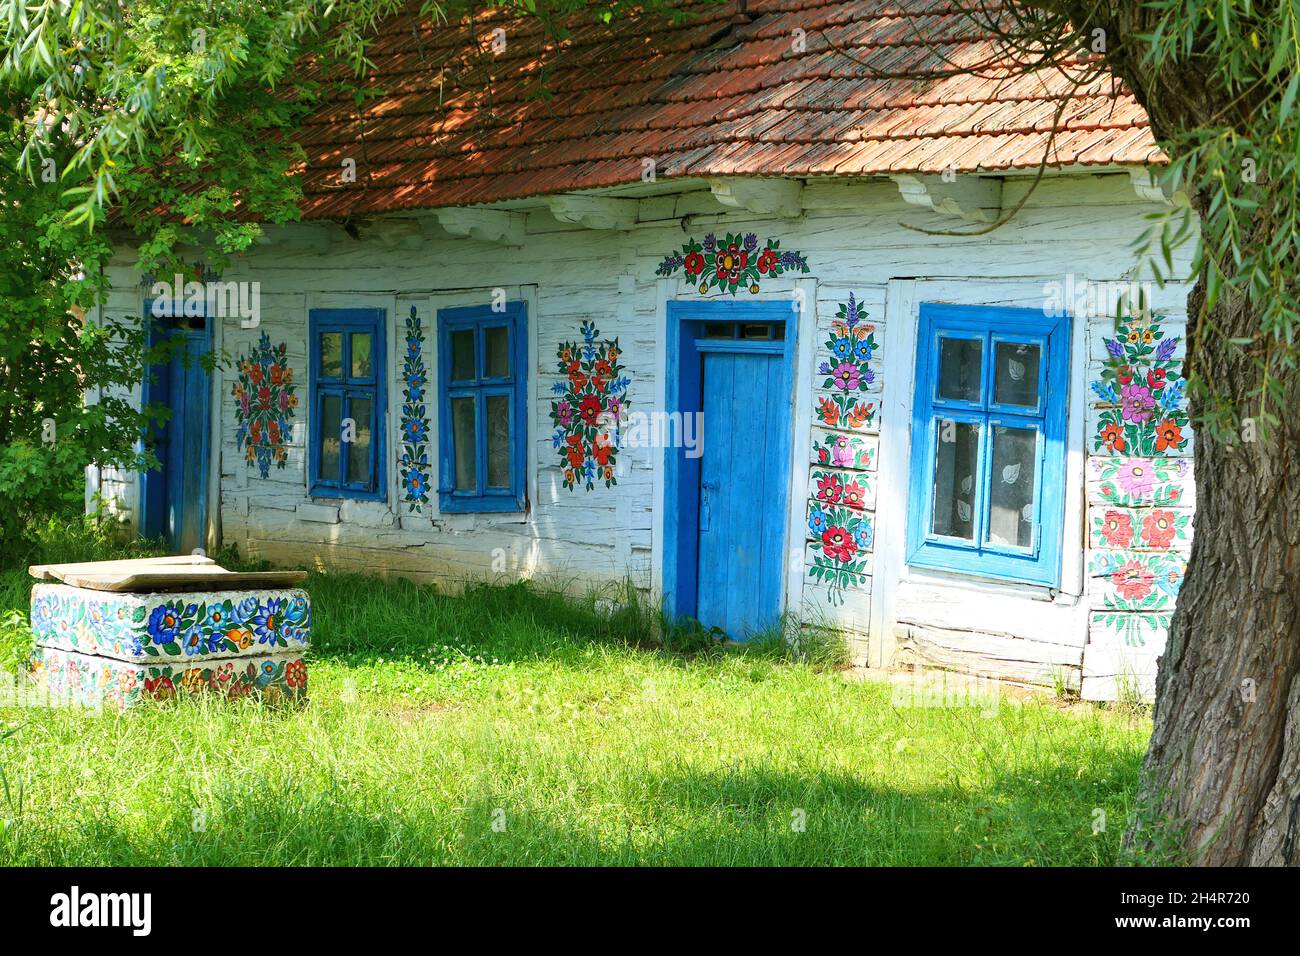 Zalipie, Polen - 21. Juni 2019: Traditionelle handgemalte Blumendekorationen auf einem alten Holzhaus im berühmten polnischen Dorf Zalipie. Stockfoto